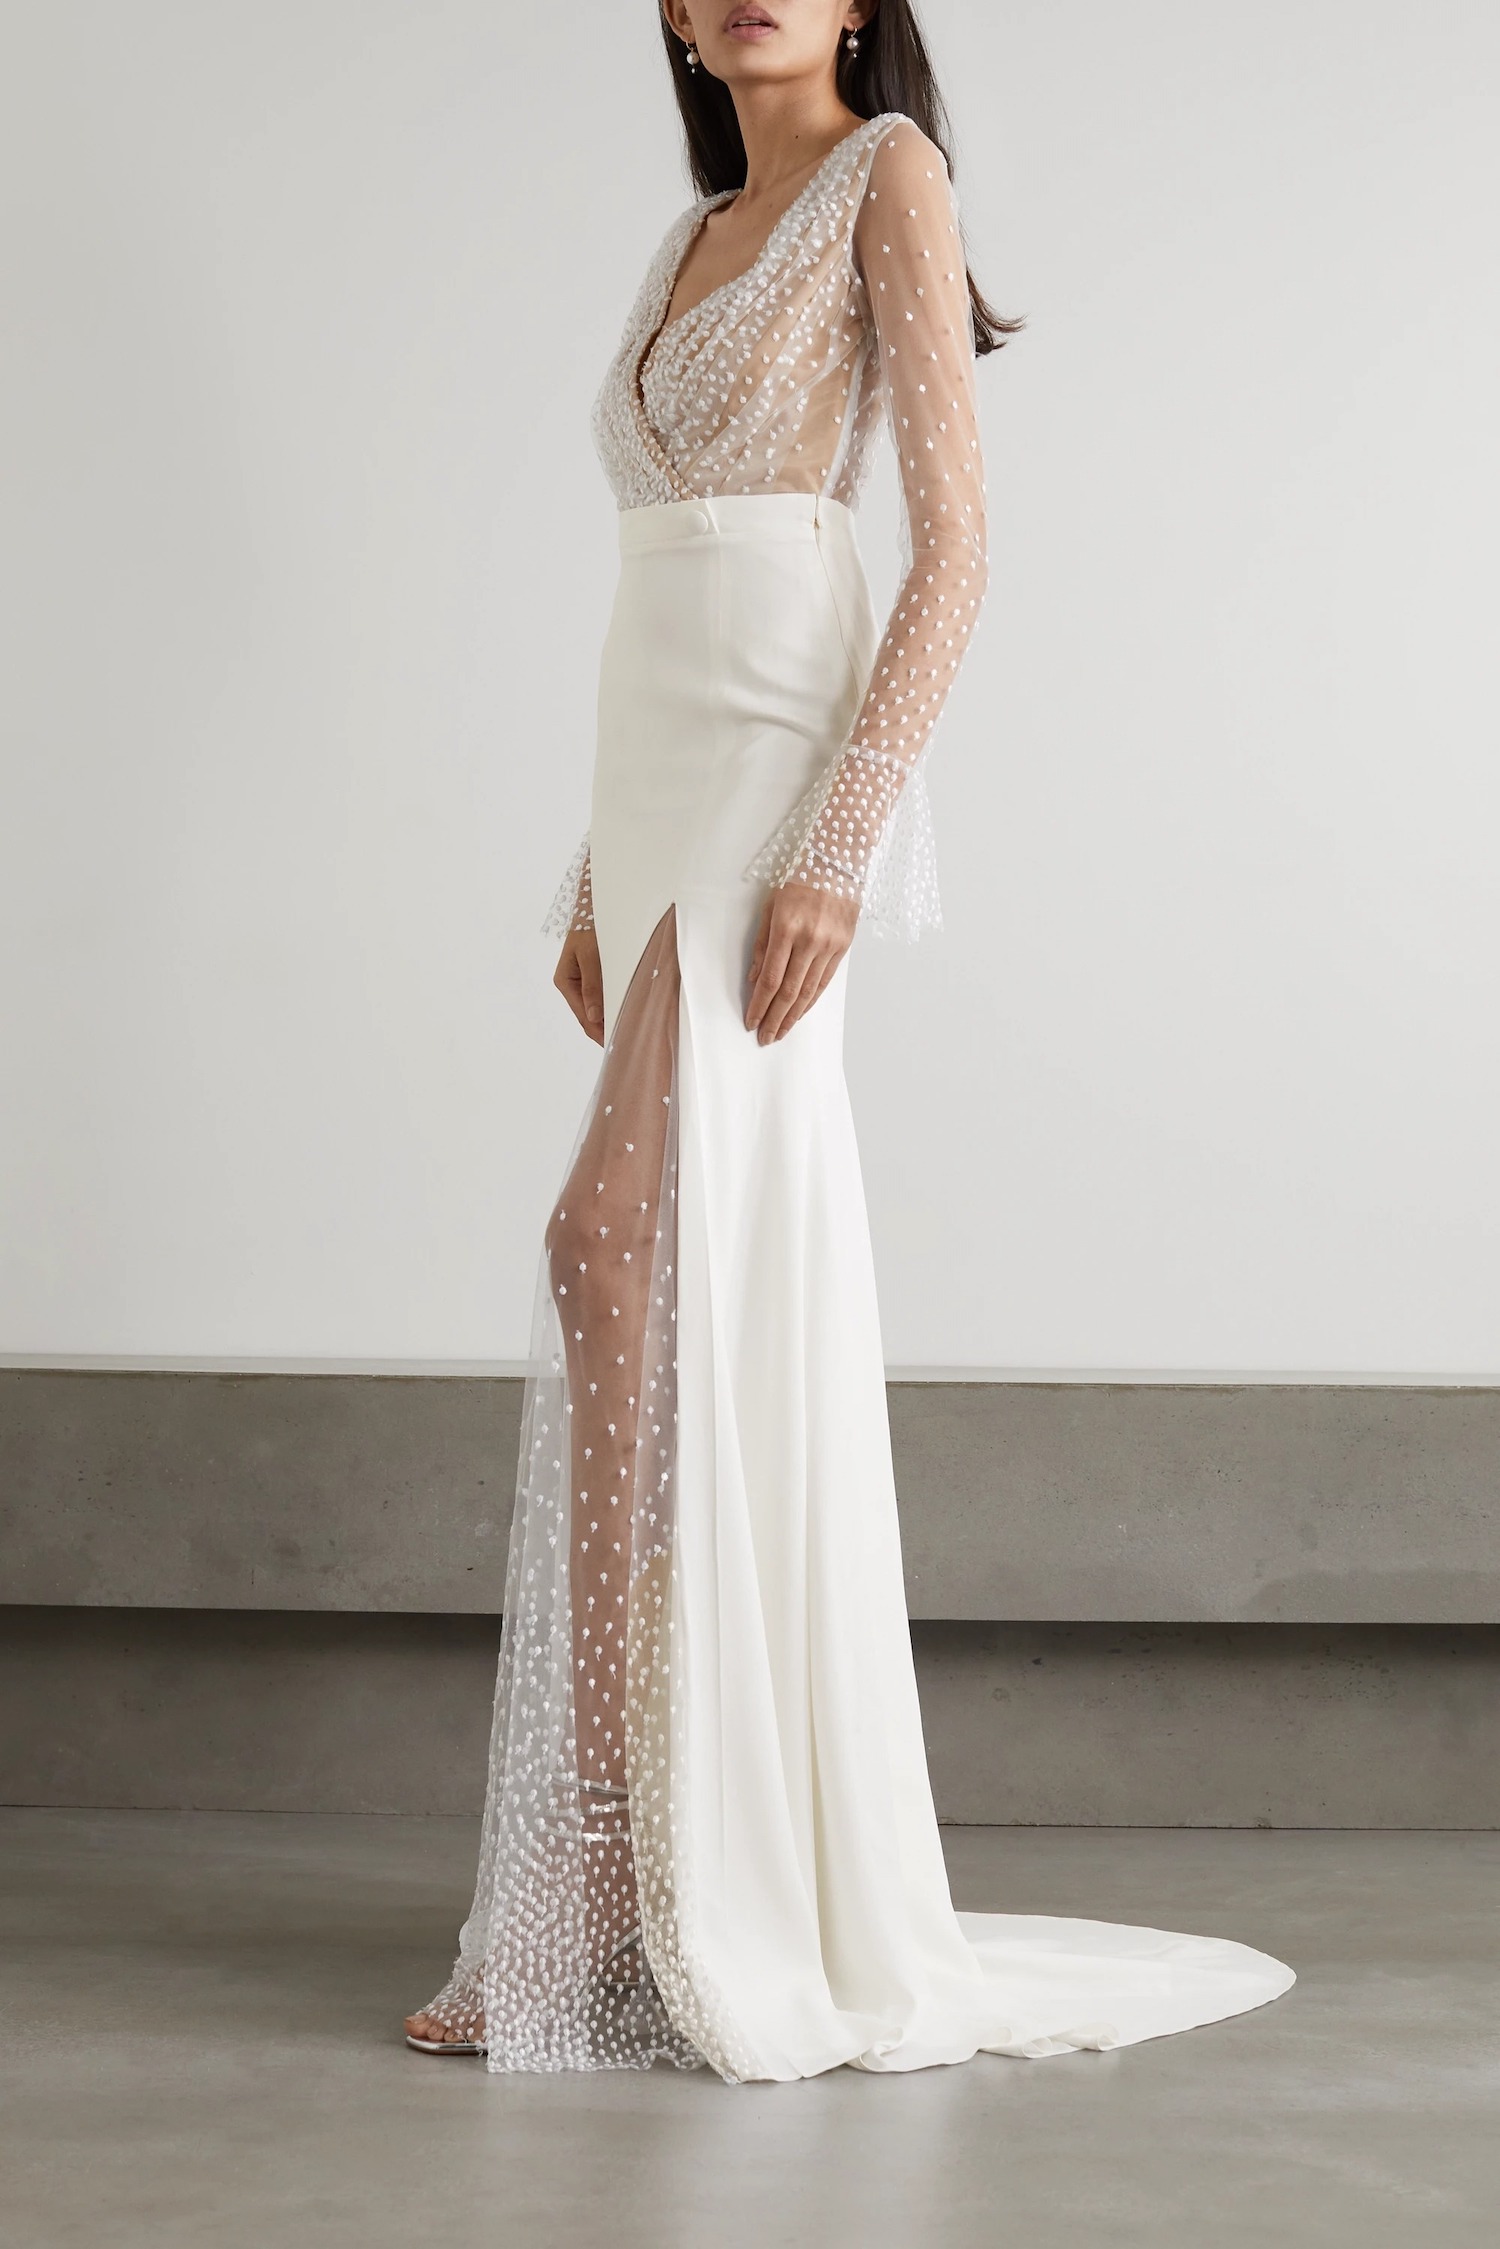 whimsical sheer tulle and crepe designer wedding dresses online by Rime Arodaky on Net-a-Porter